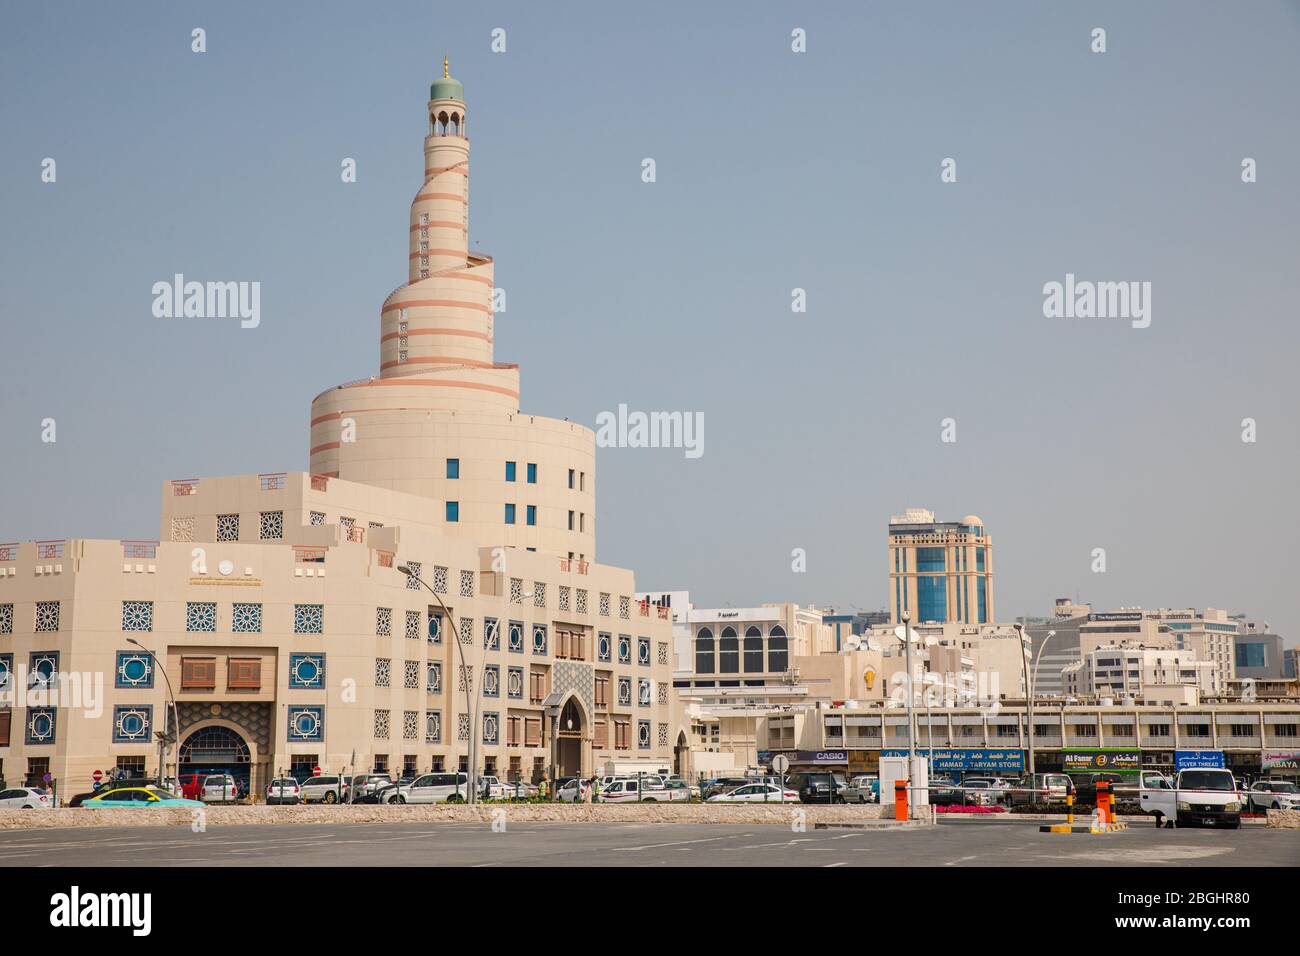 Doha, Qatar - 2 mars 2020: Vue sur la tour en spirale Al Fanar du Centre culturel islamique Abdullah Bin Zaid Al Mahmoud, architecture musulmane traditionnelle Banque D'Images